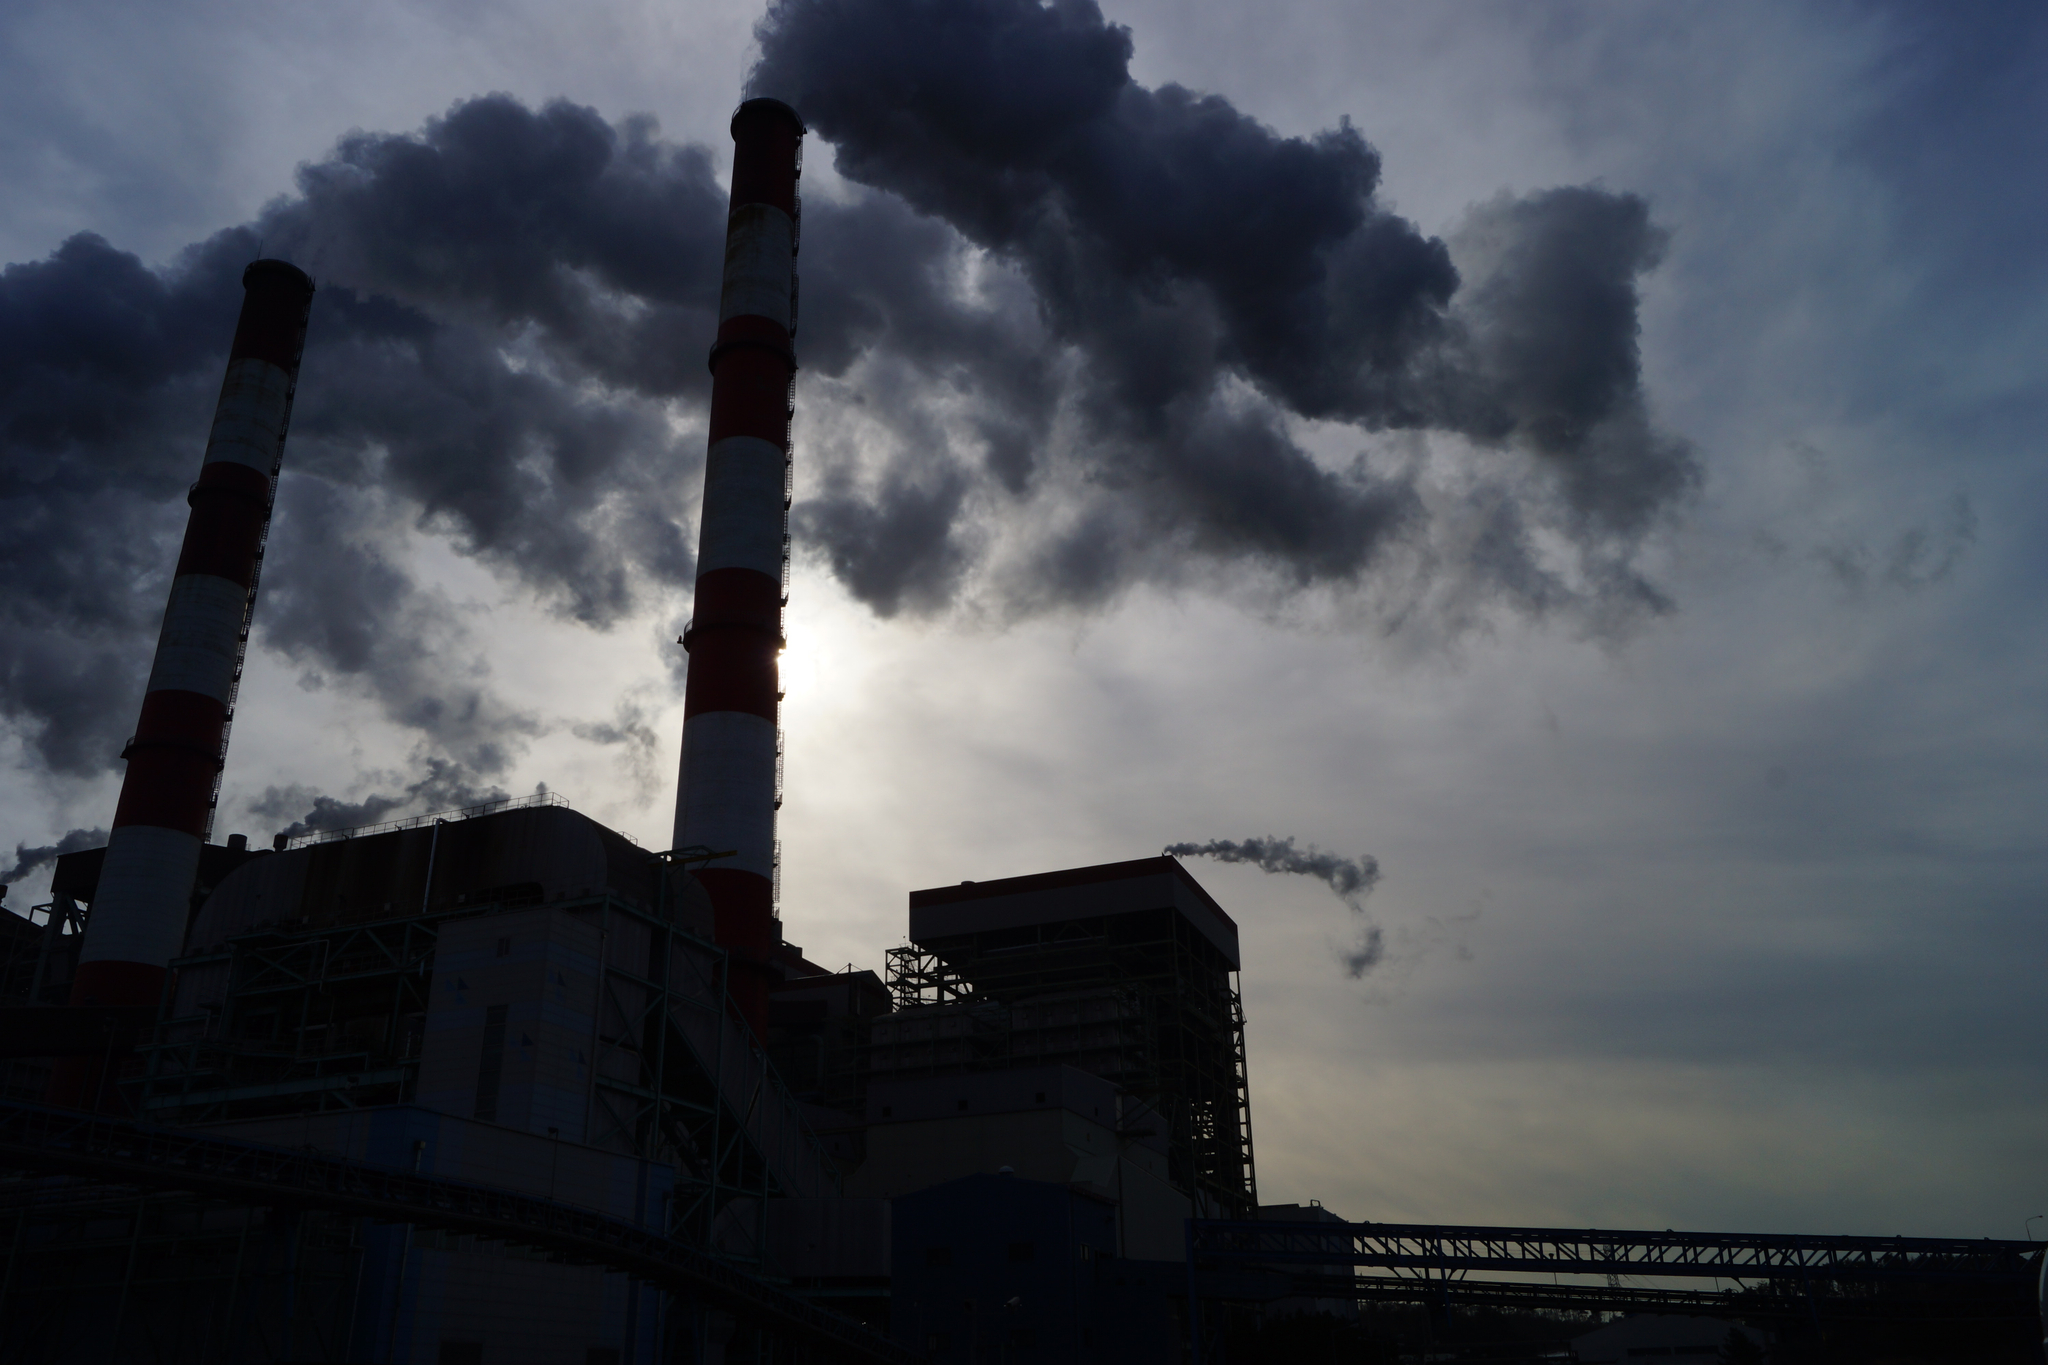 국내 한 화력발전소의 굴뚝. 공장이나 발전소 등에서 석탄 등 화석연료를 태우면 산성 대기오염 물질이 배출되고, 이는 산성비로 이어진다. 강찬수 기자